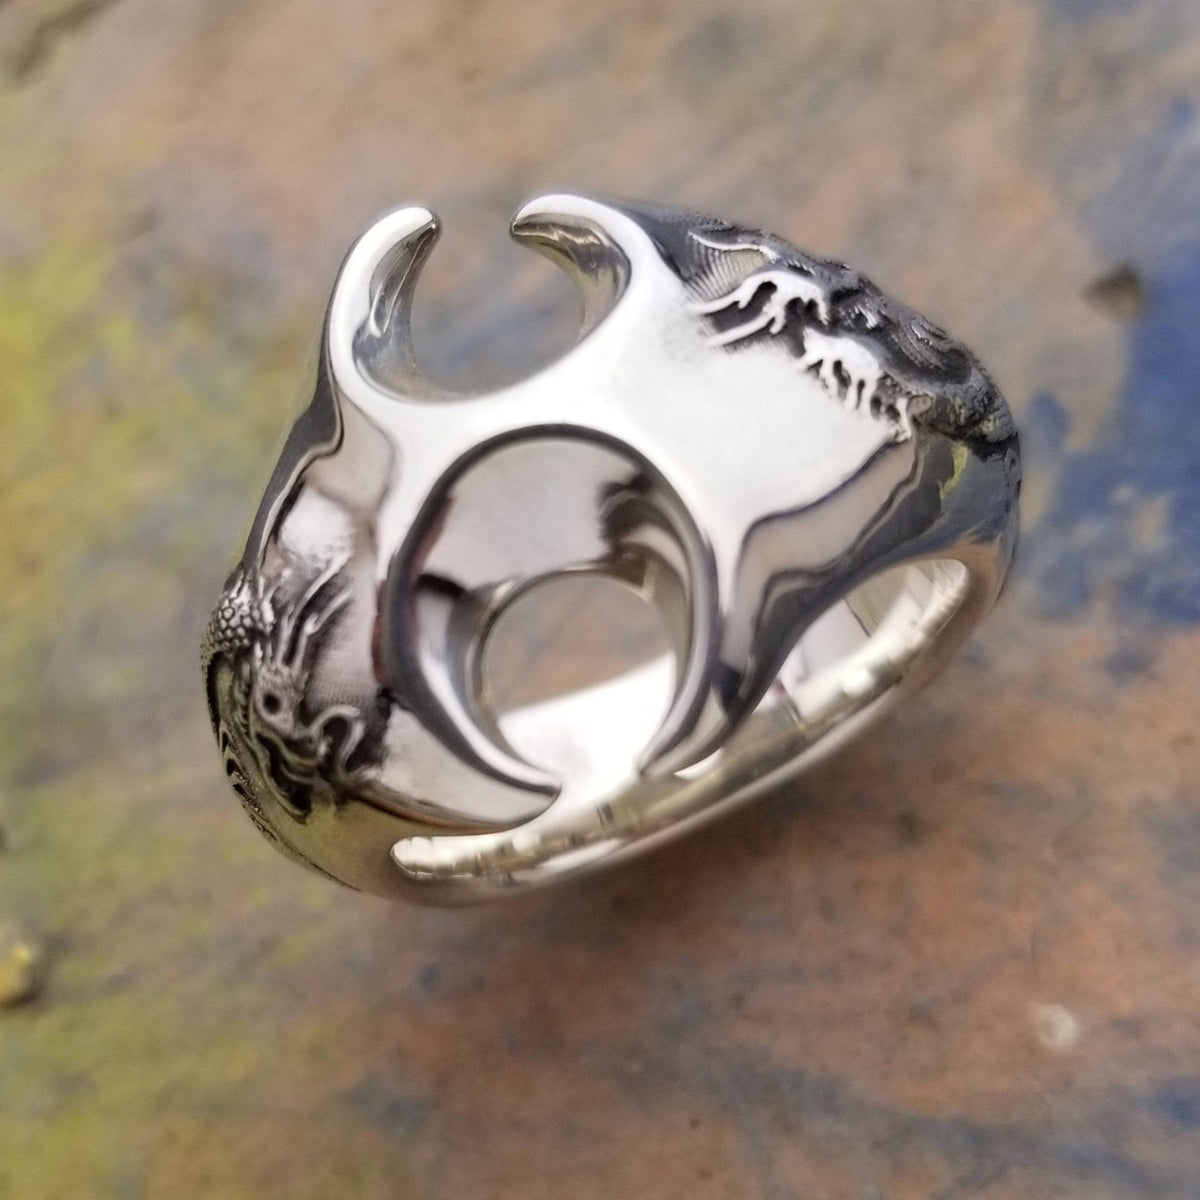 Super massive silver dragon ring